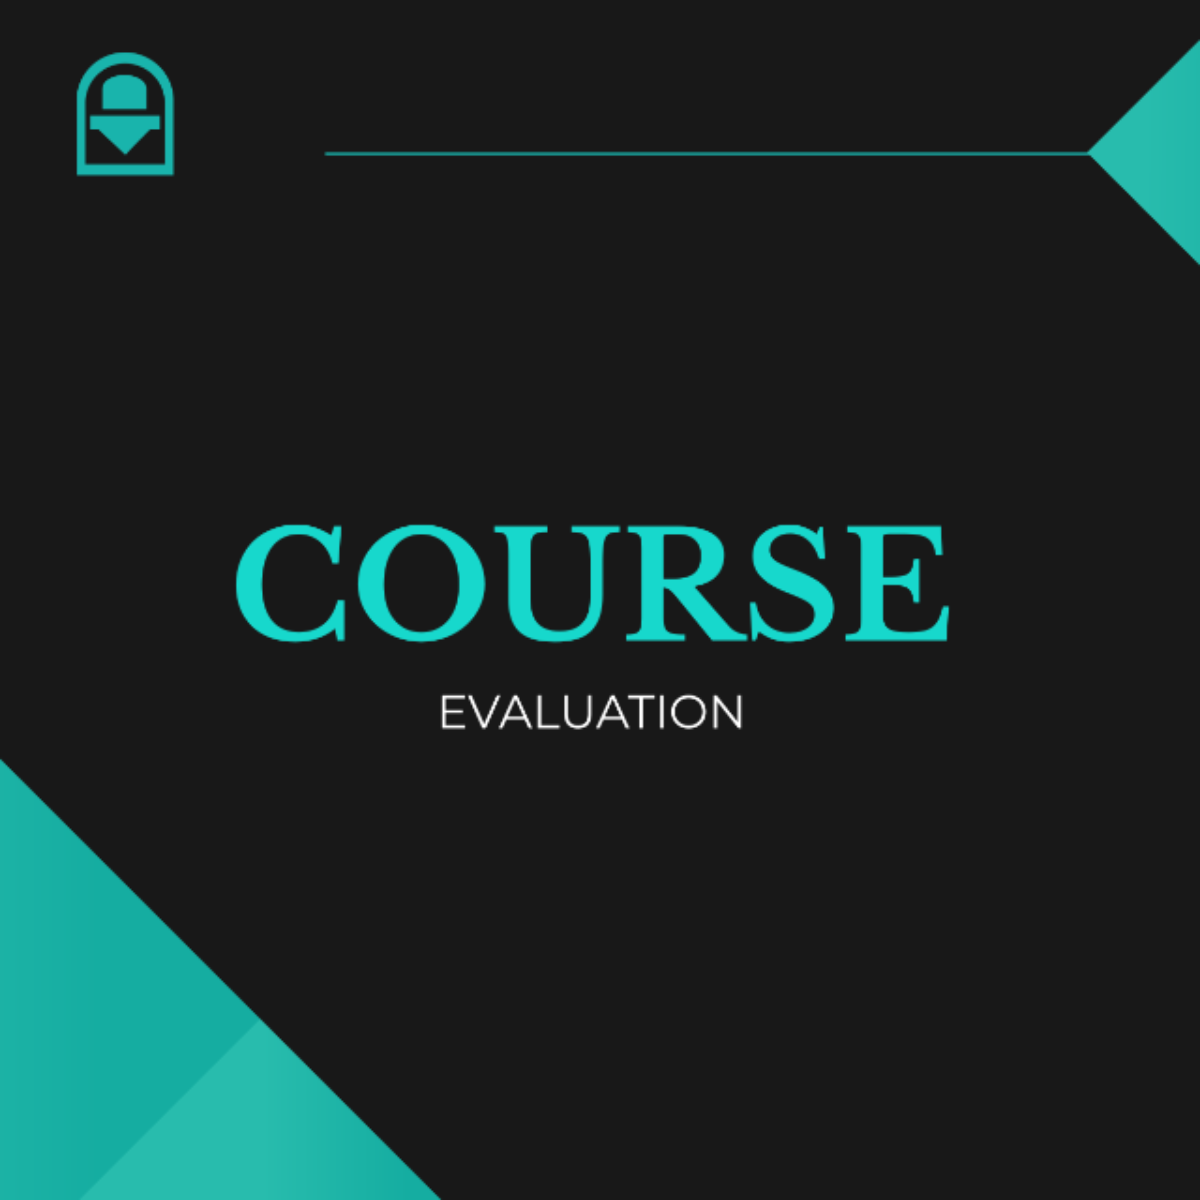 Course Evaluation Template